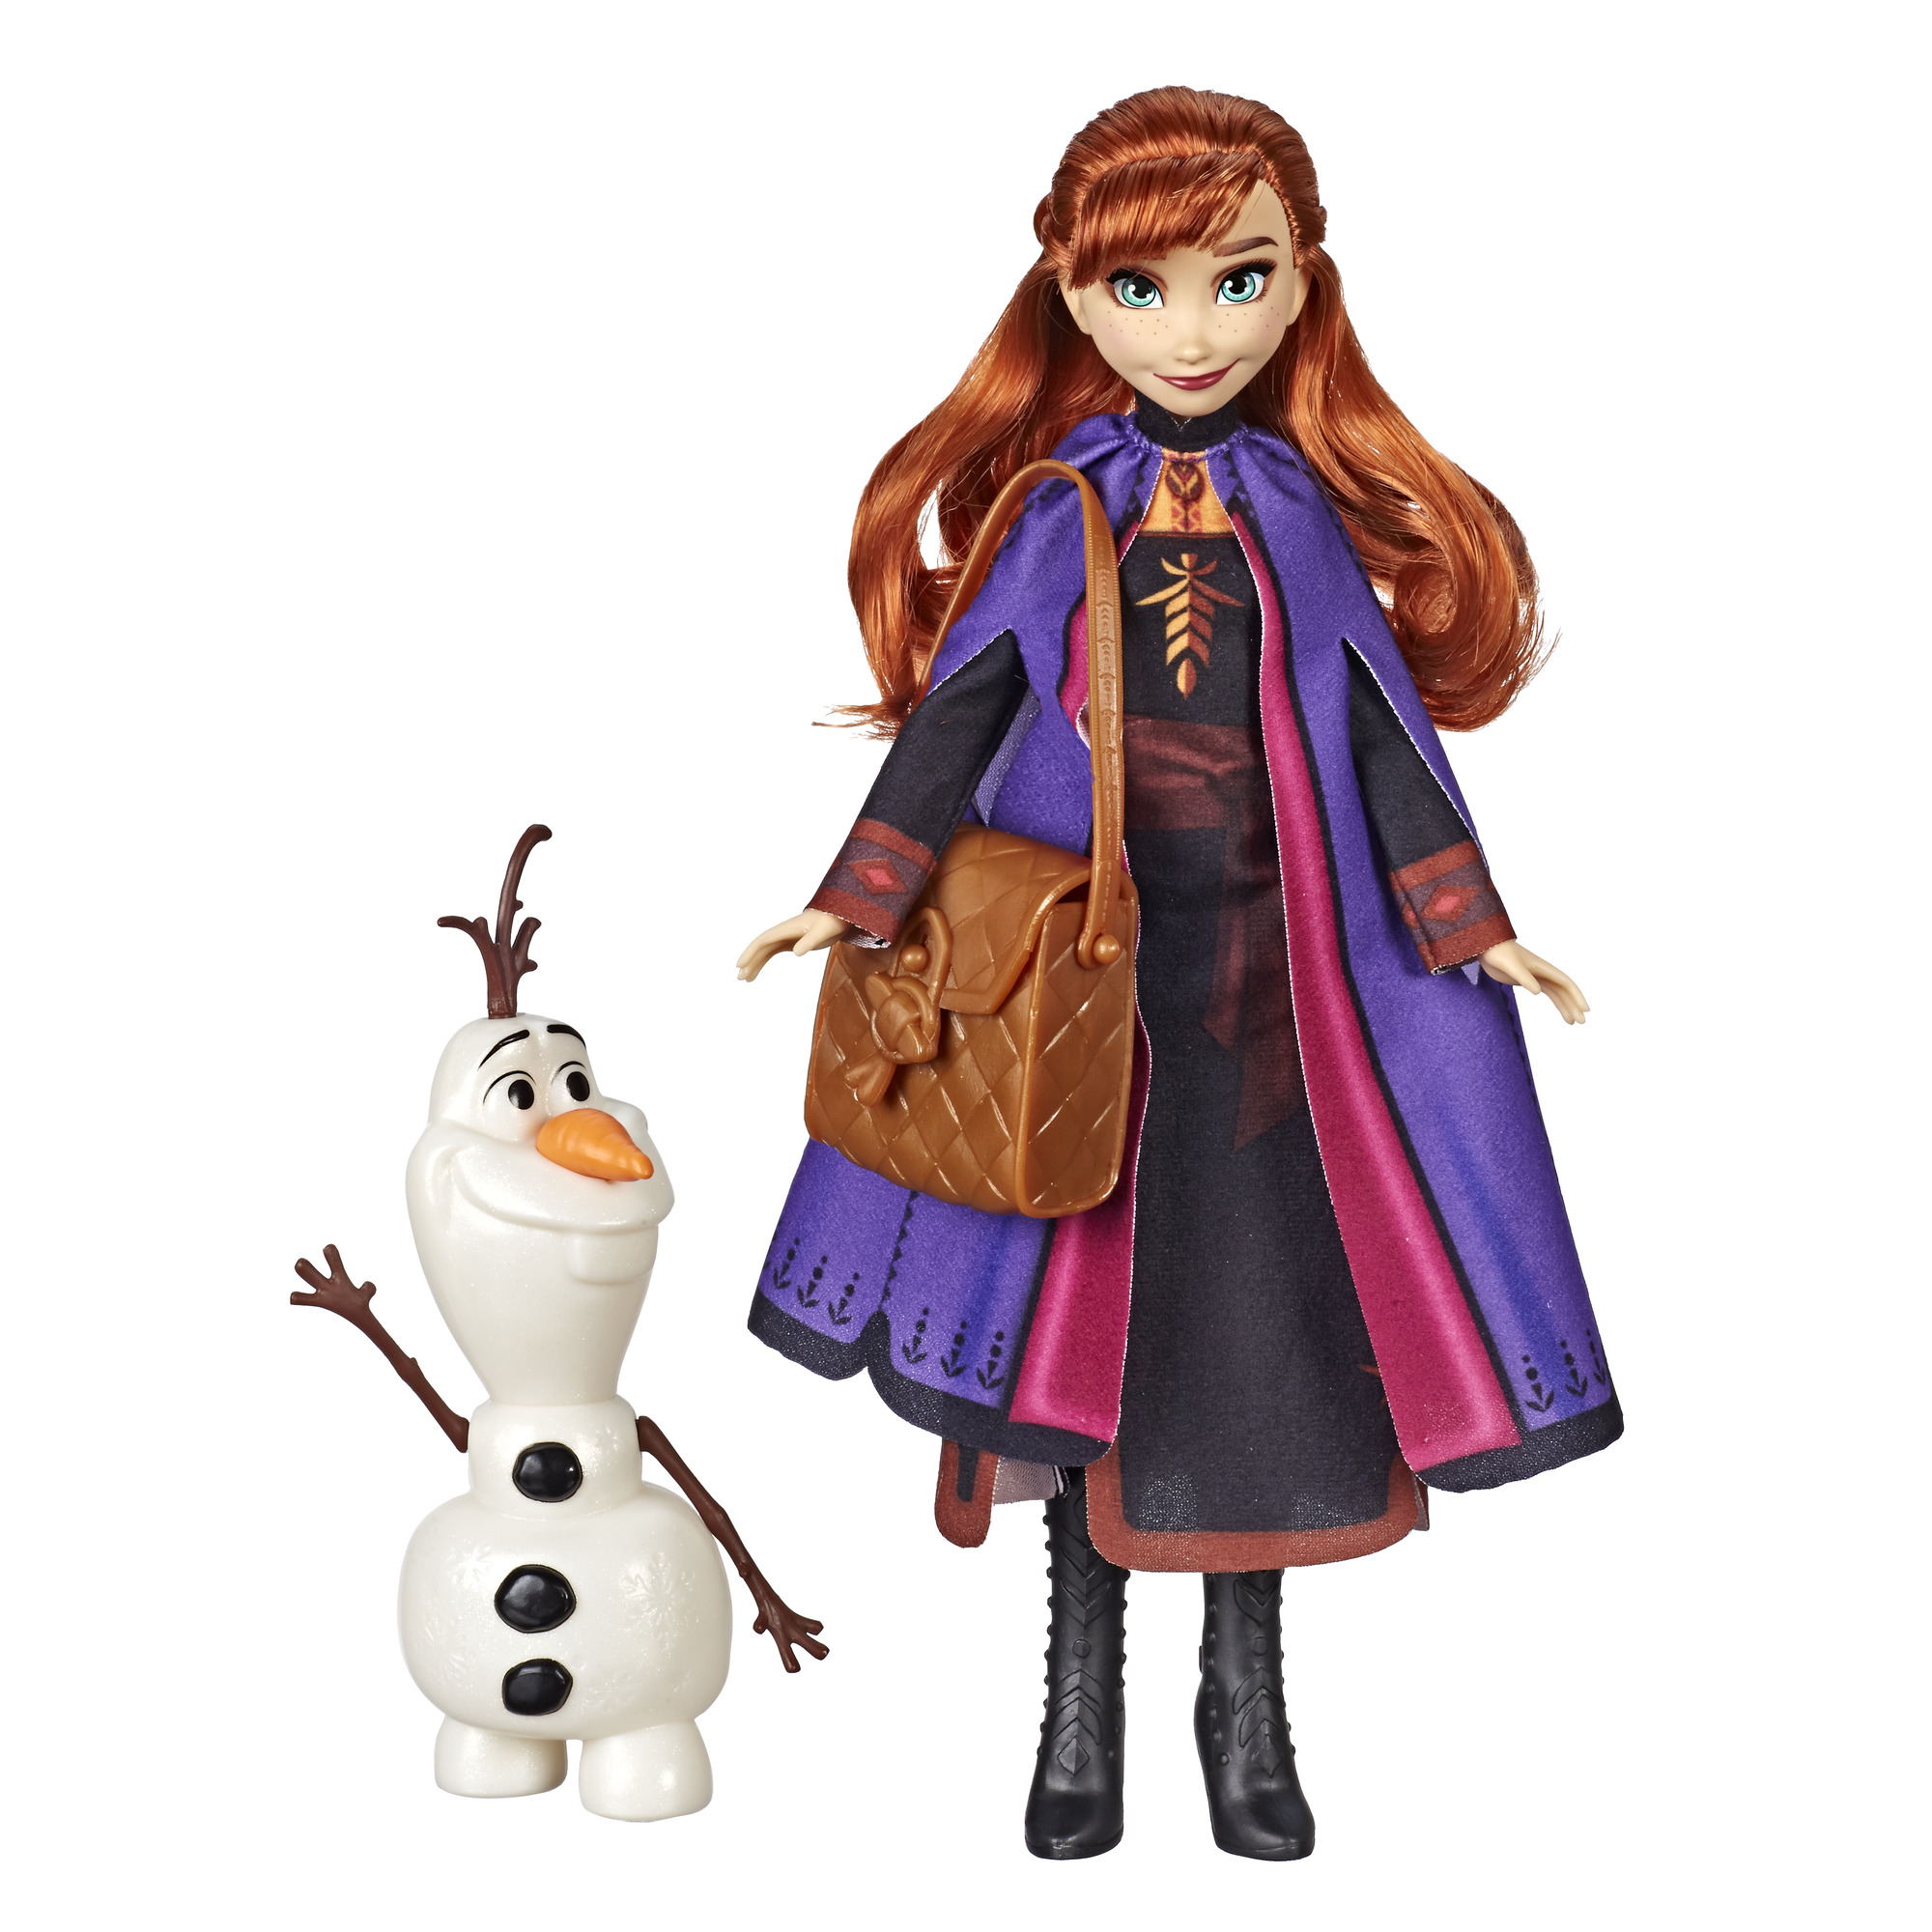 Disney Frozen 2 - Fashion Doll - Anna & Olaf (E6661)